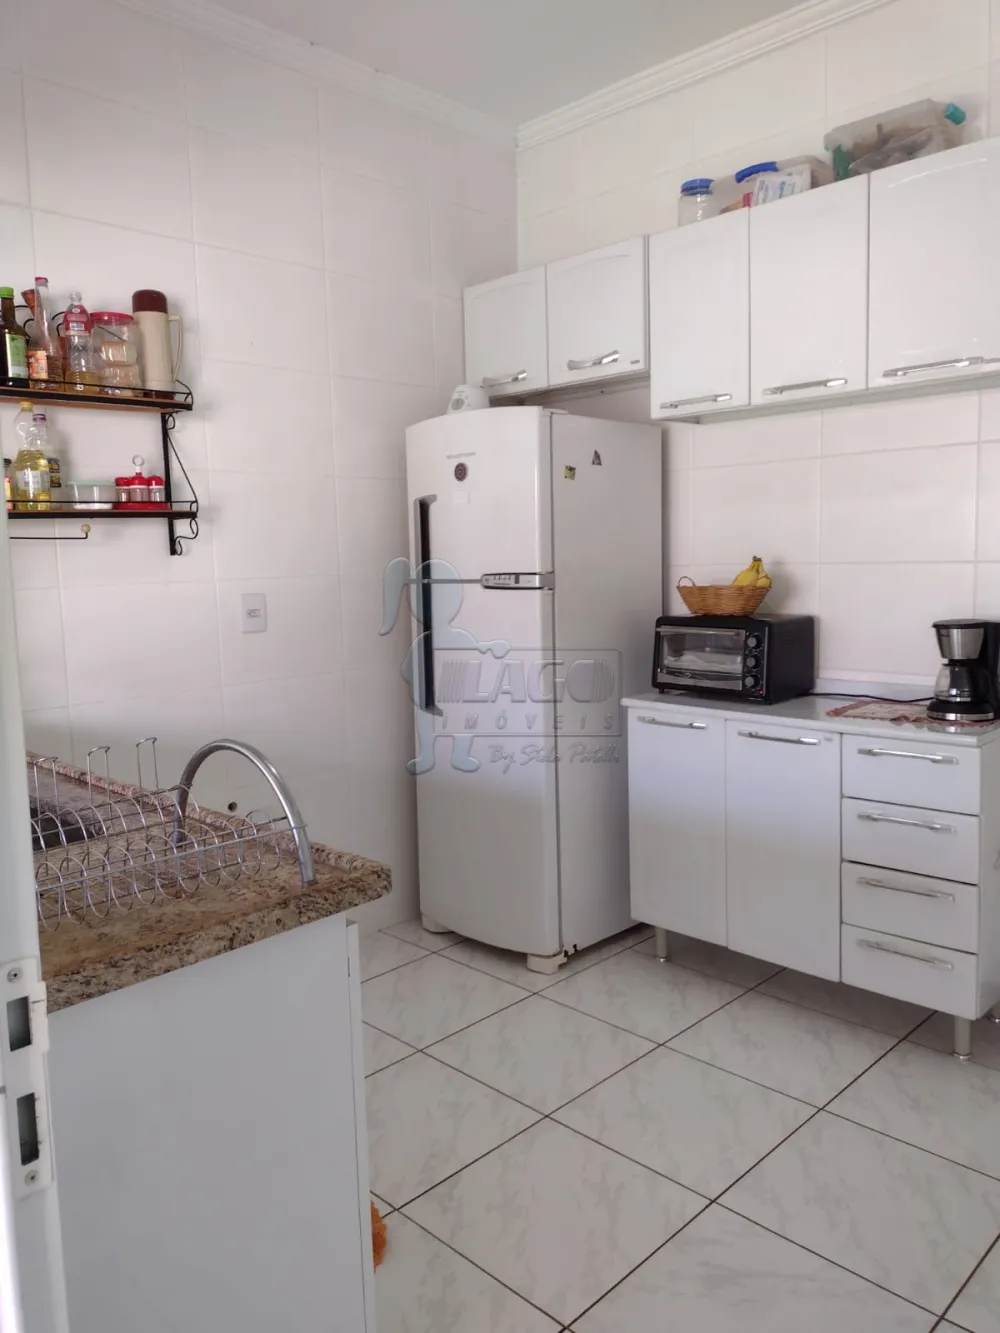 Comprar Casas / Padrão em Sertãozinho R$ 400.000,00 - Foto 12